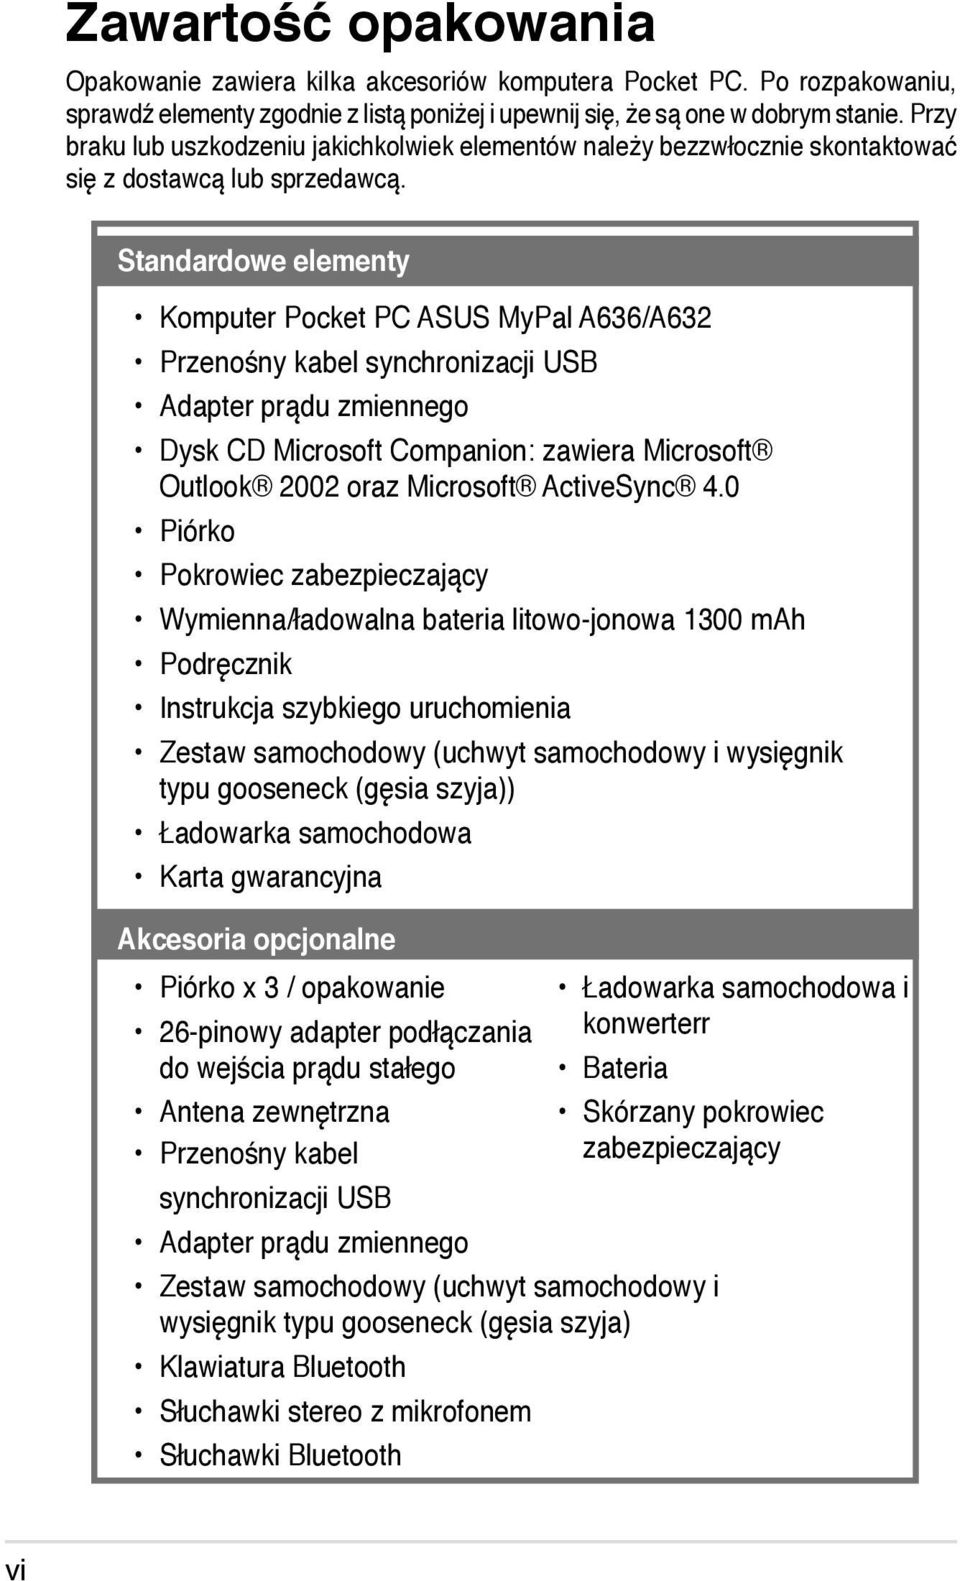 Standardowe elementy Komputer Pocket PC ASUS MyPal A636/A632 Przenośny kabel synchronizacji USB Adapter prądu zmiennego Dysk CD Microsoft Companion: zawiera Microsoft Outlook 2002 oraz Microsoft